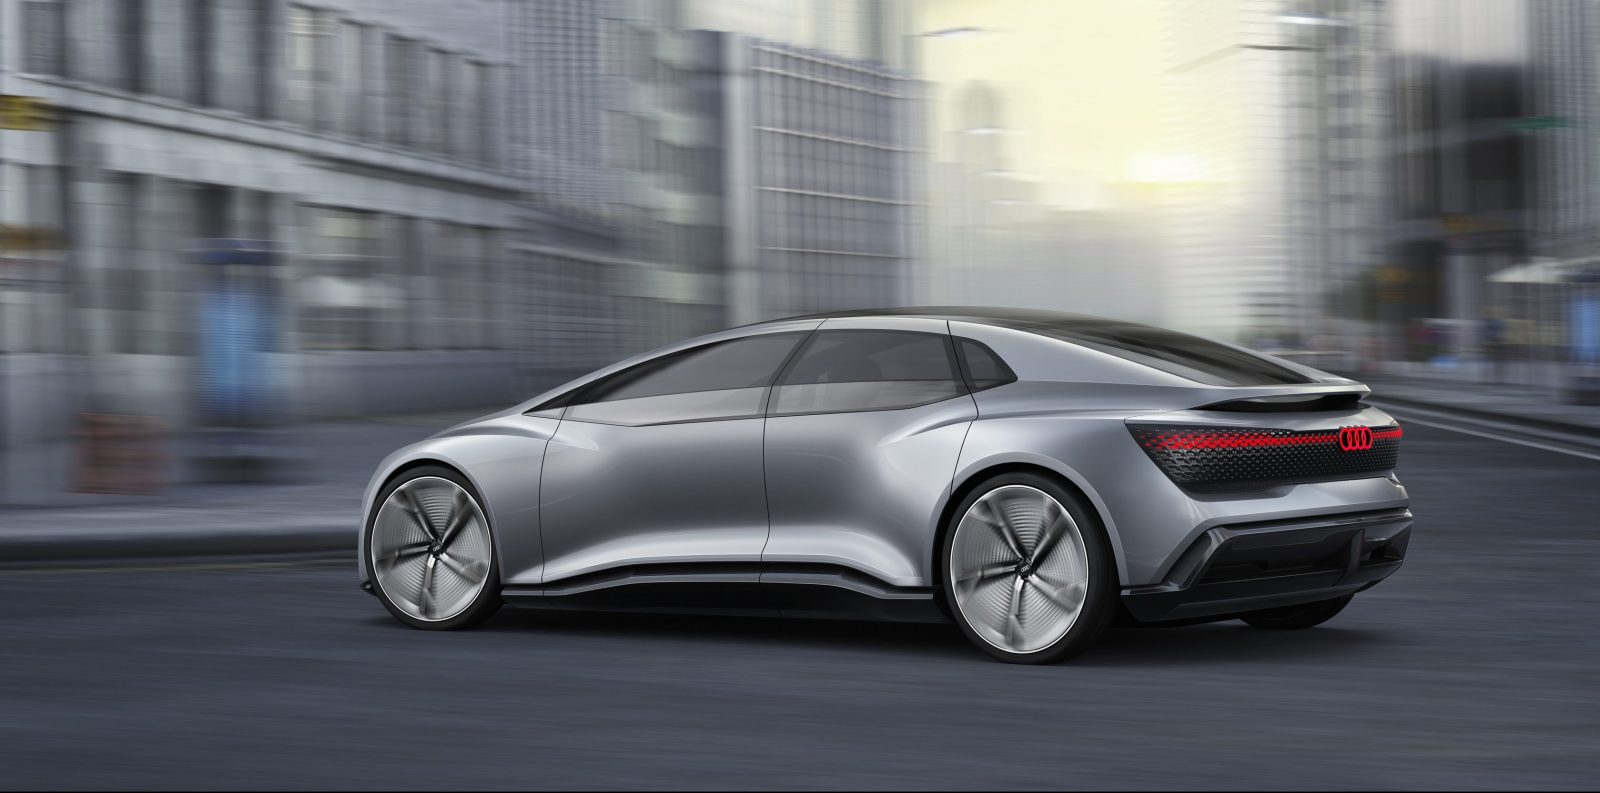 Audi Autonomous Electric Car Concept